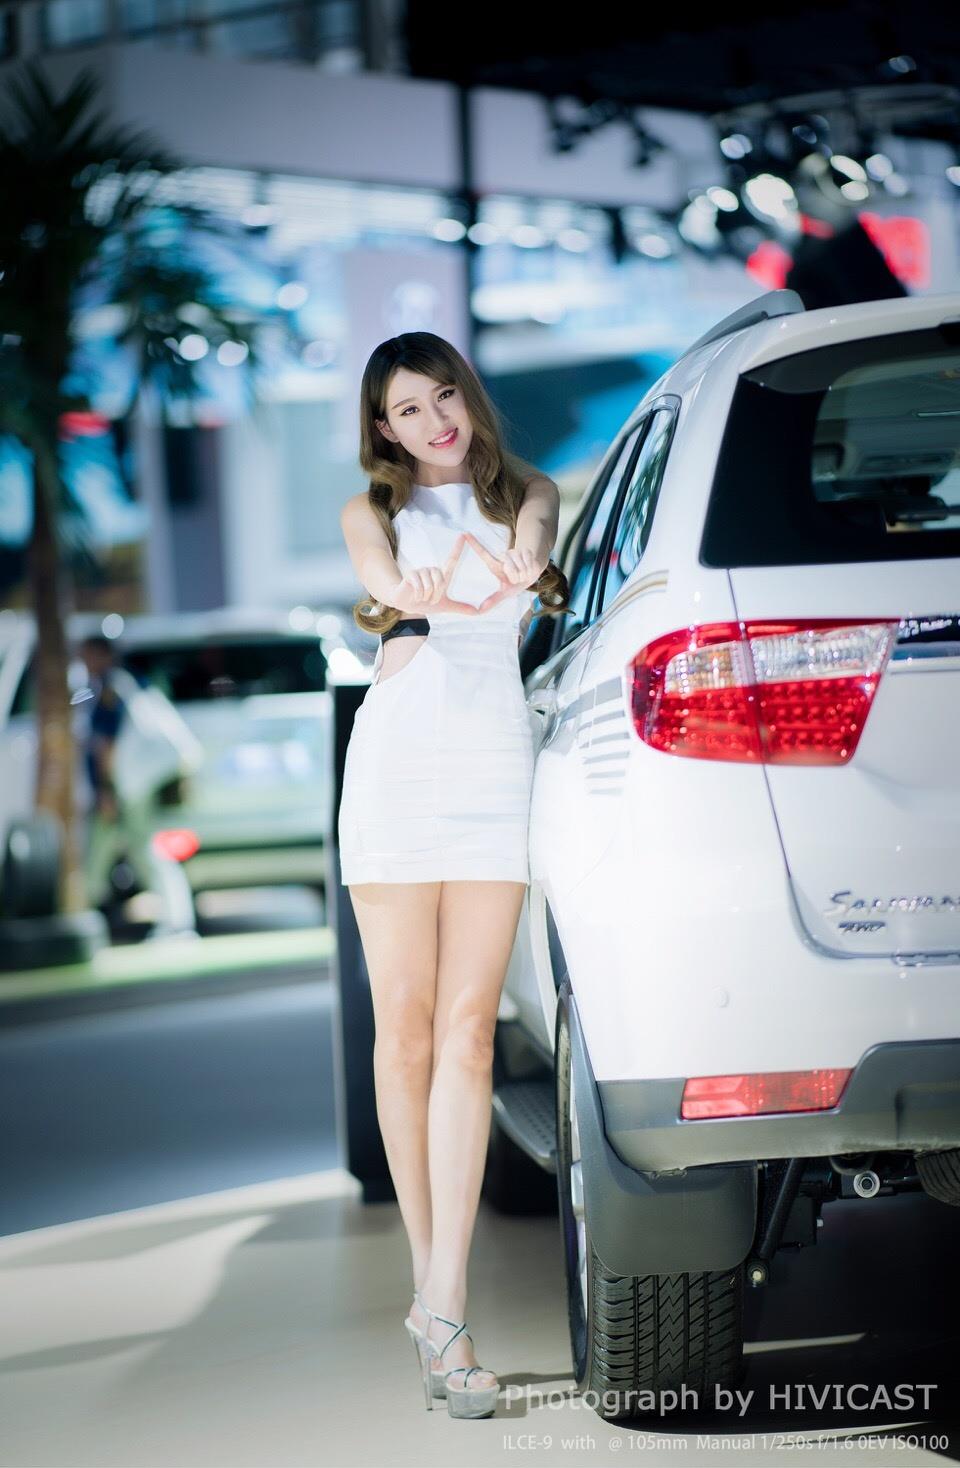 2017广州车展 北京福田汽车展台 身穿白色紧身连身裙的美女车模  第2张